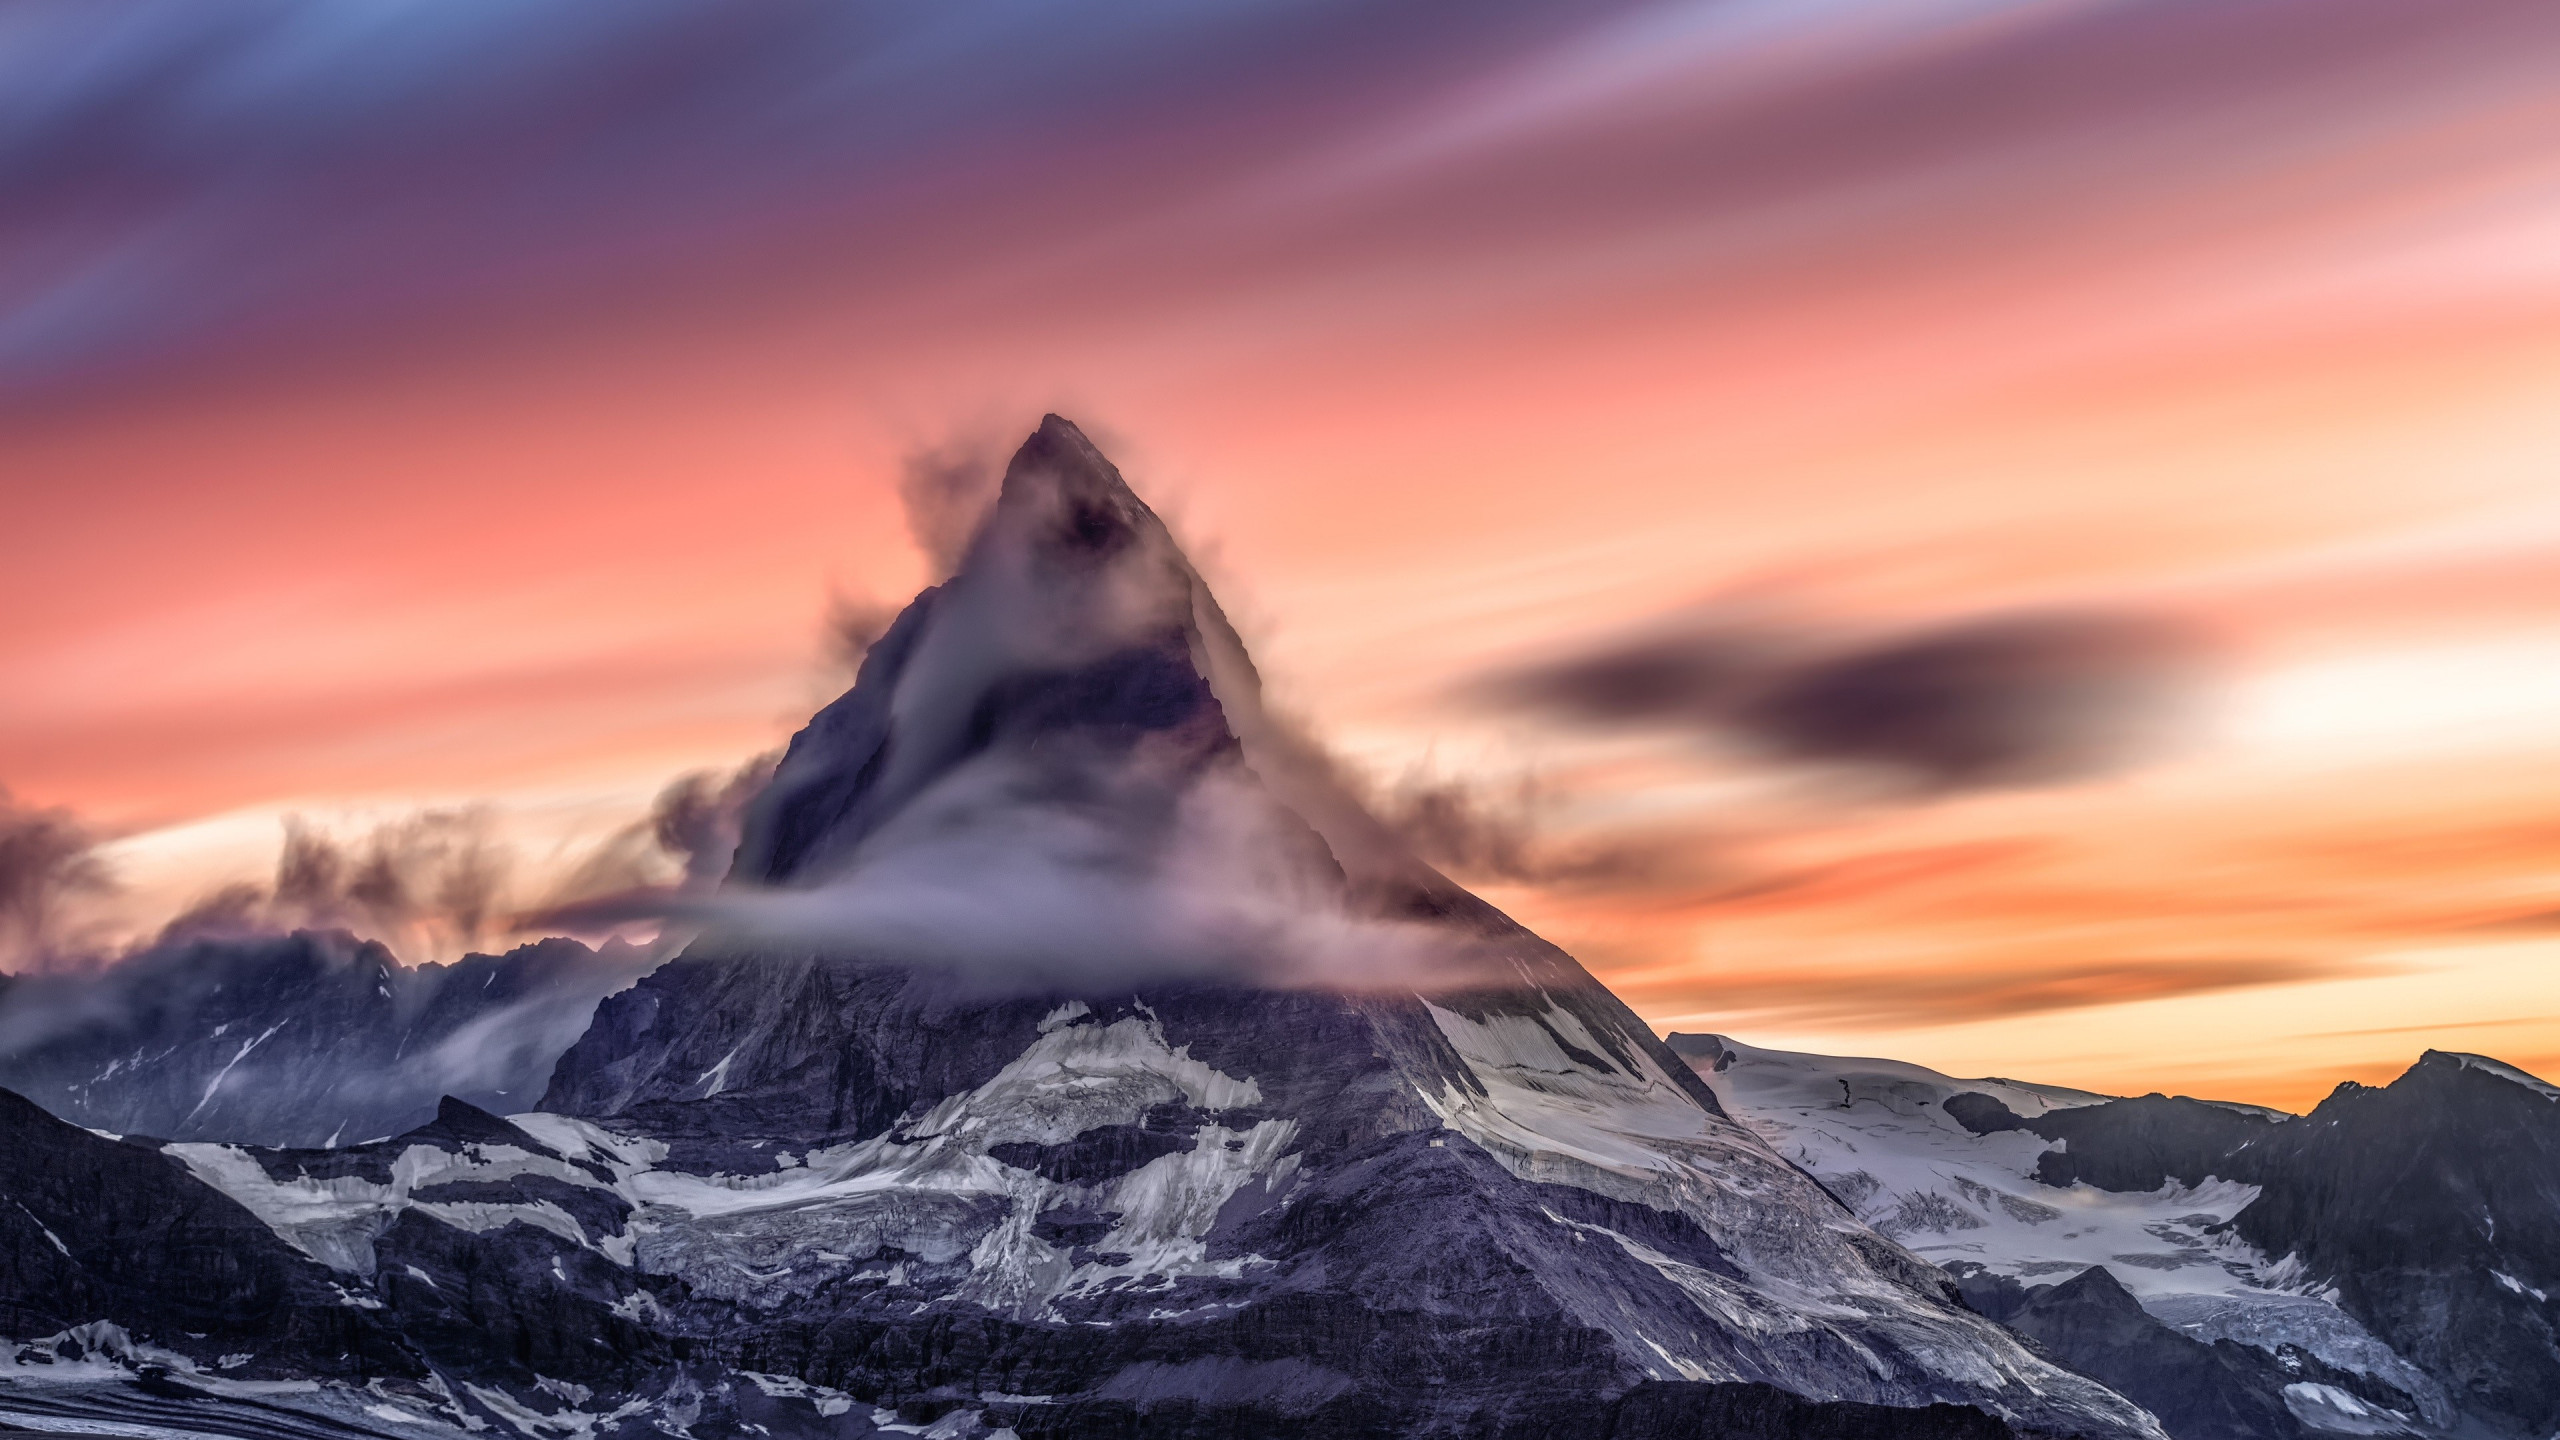 Matterhorn mountain from Alps wallpaper 2560x1440